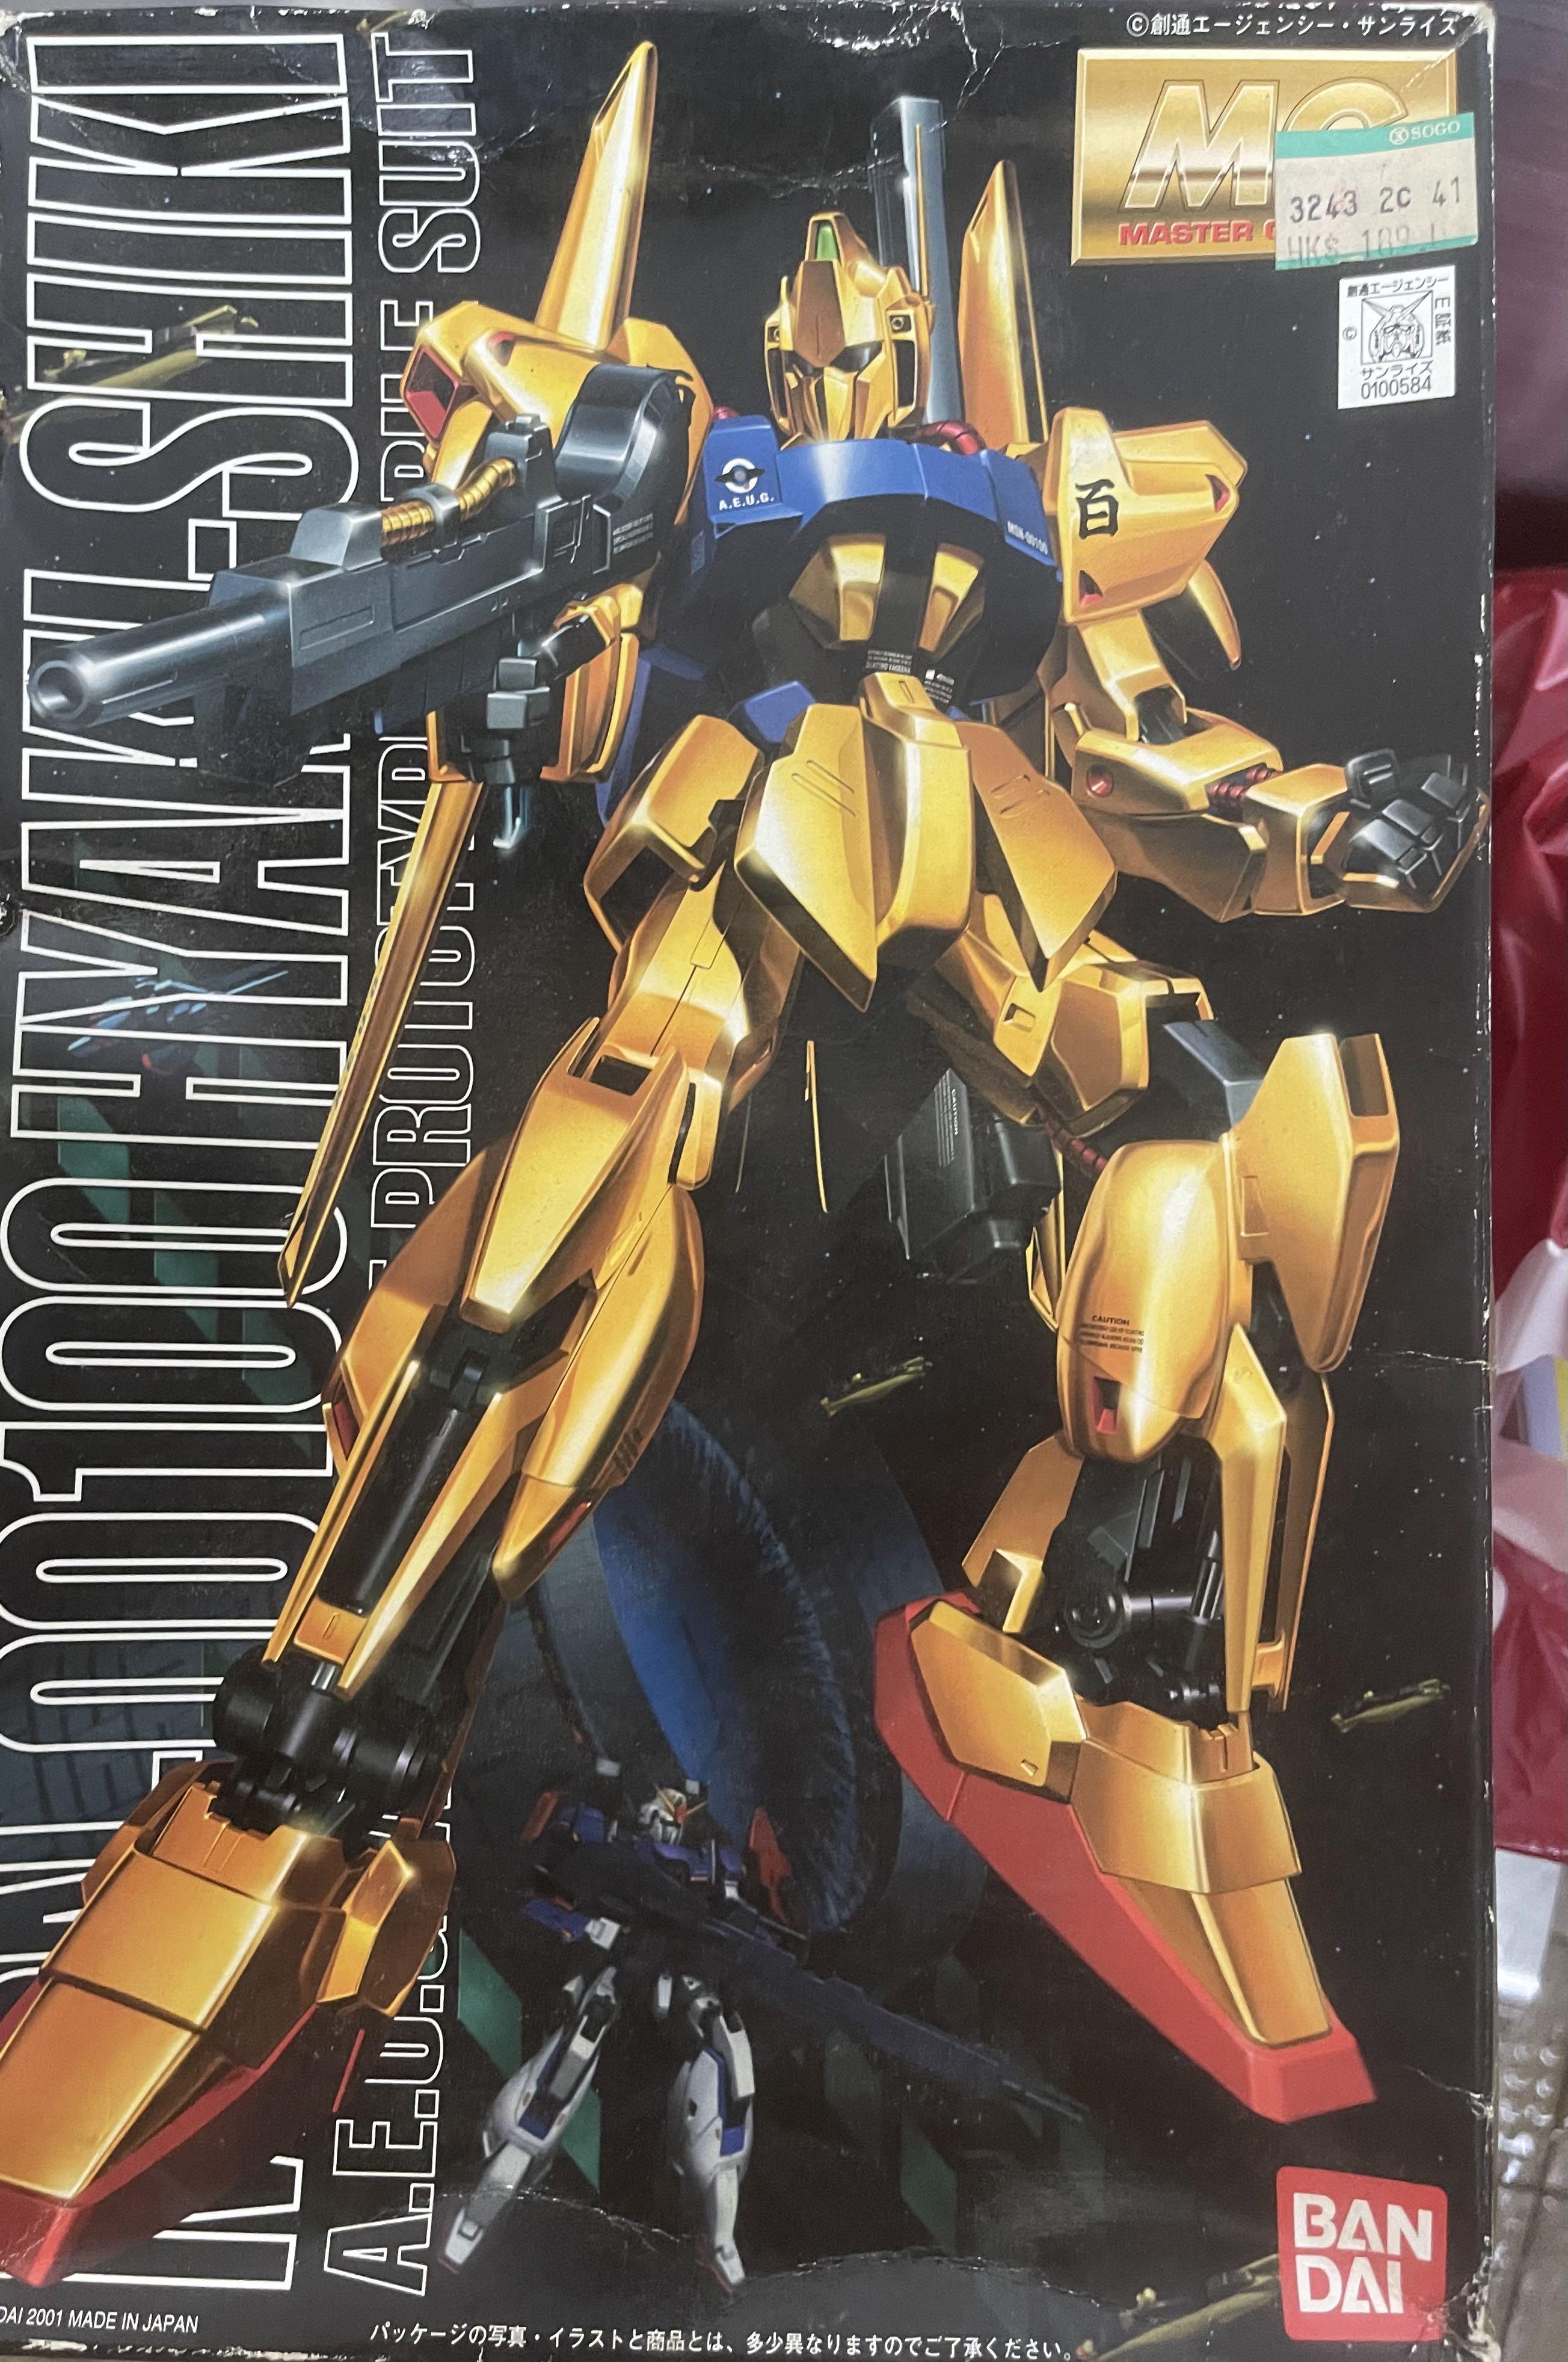 絕版全新未砌Bandai 會埸限定MG Gundam 百式1.0 Hyaku-Shiki 電鍍版1